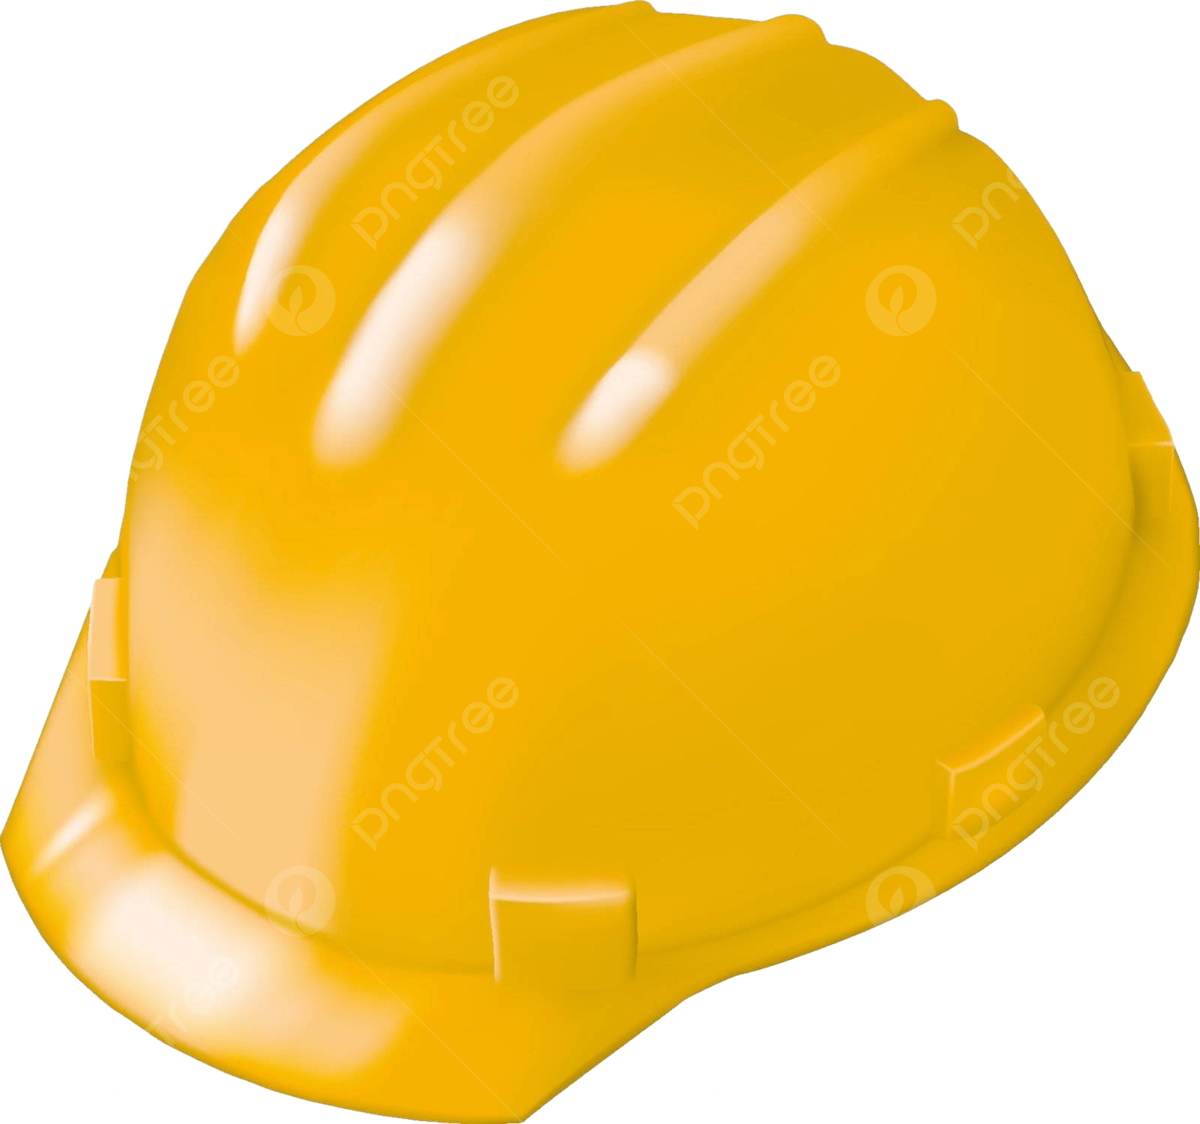 Construction Hat